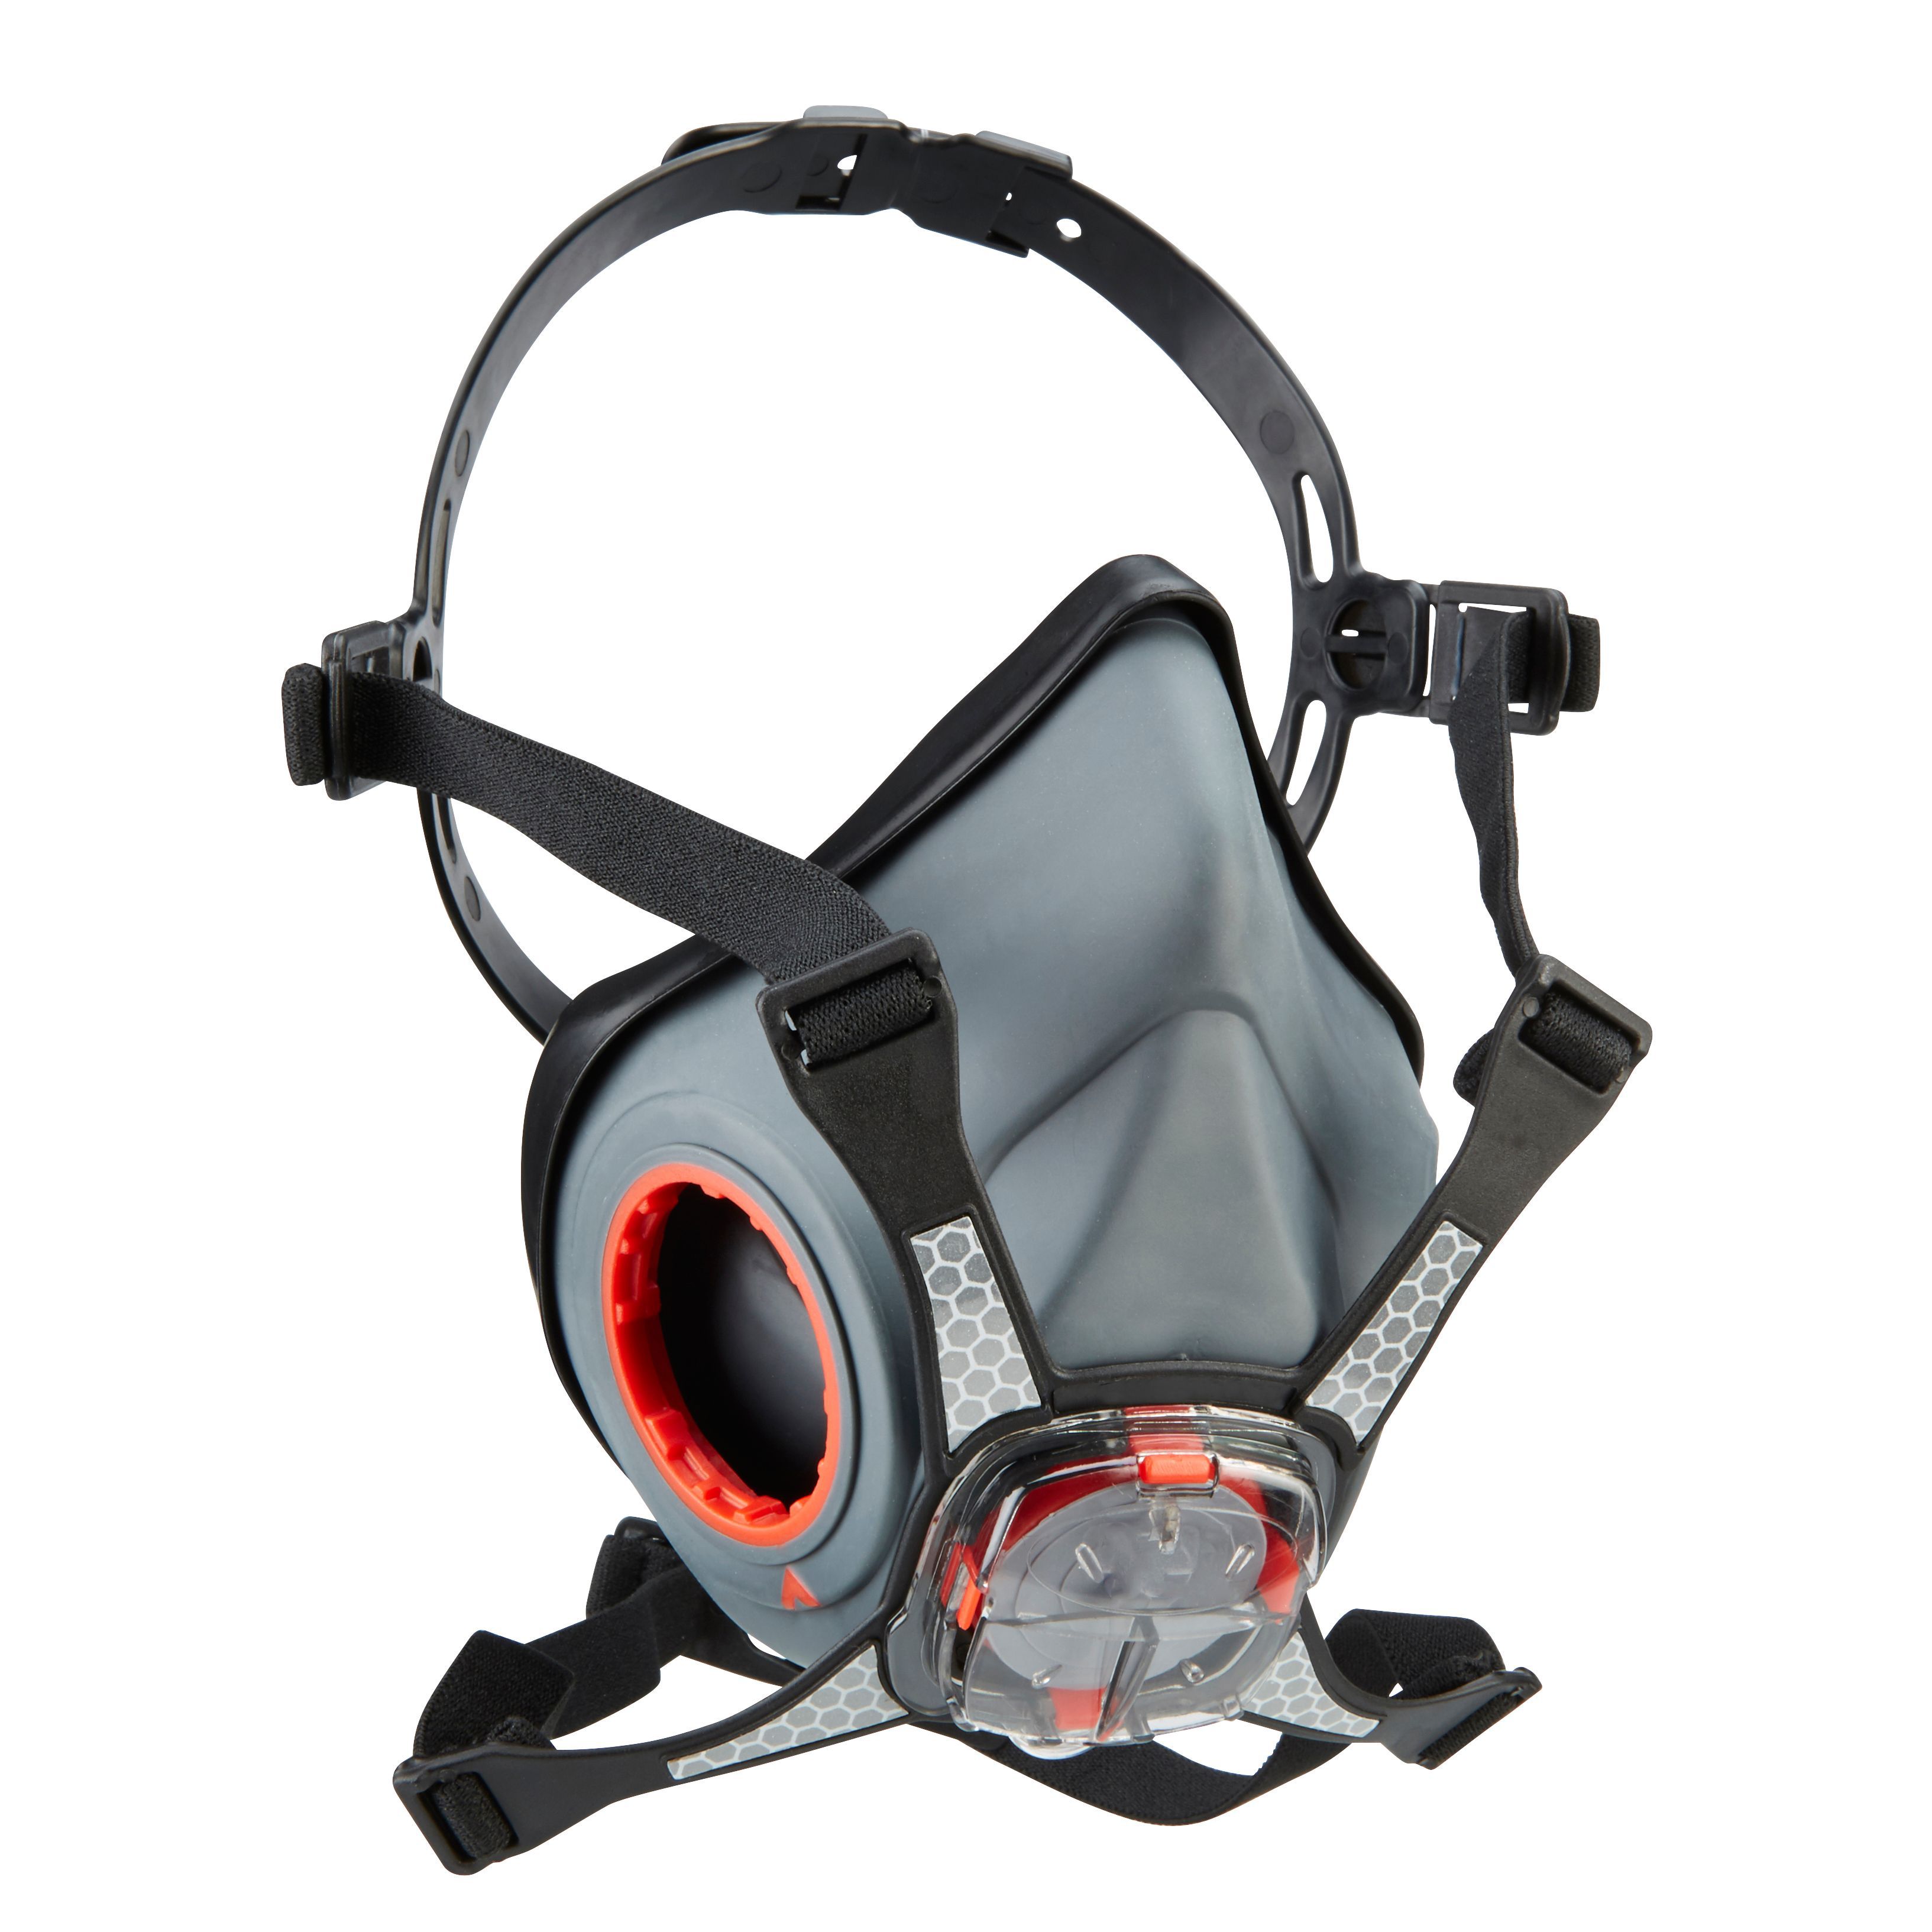 JSP Reusable respiratory mask